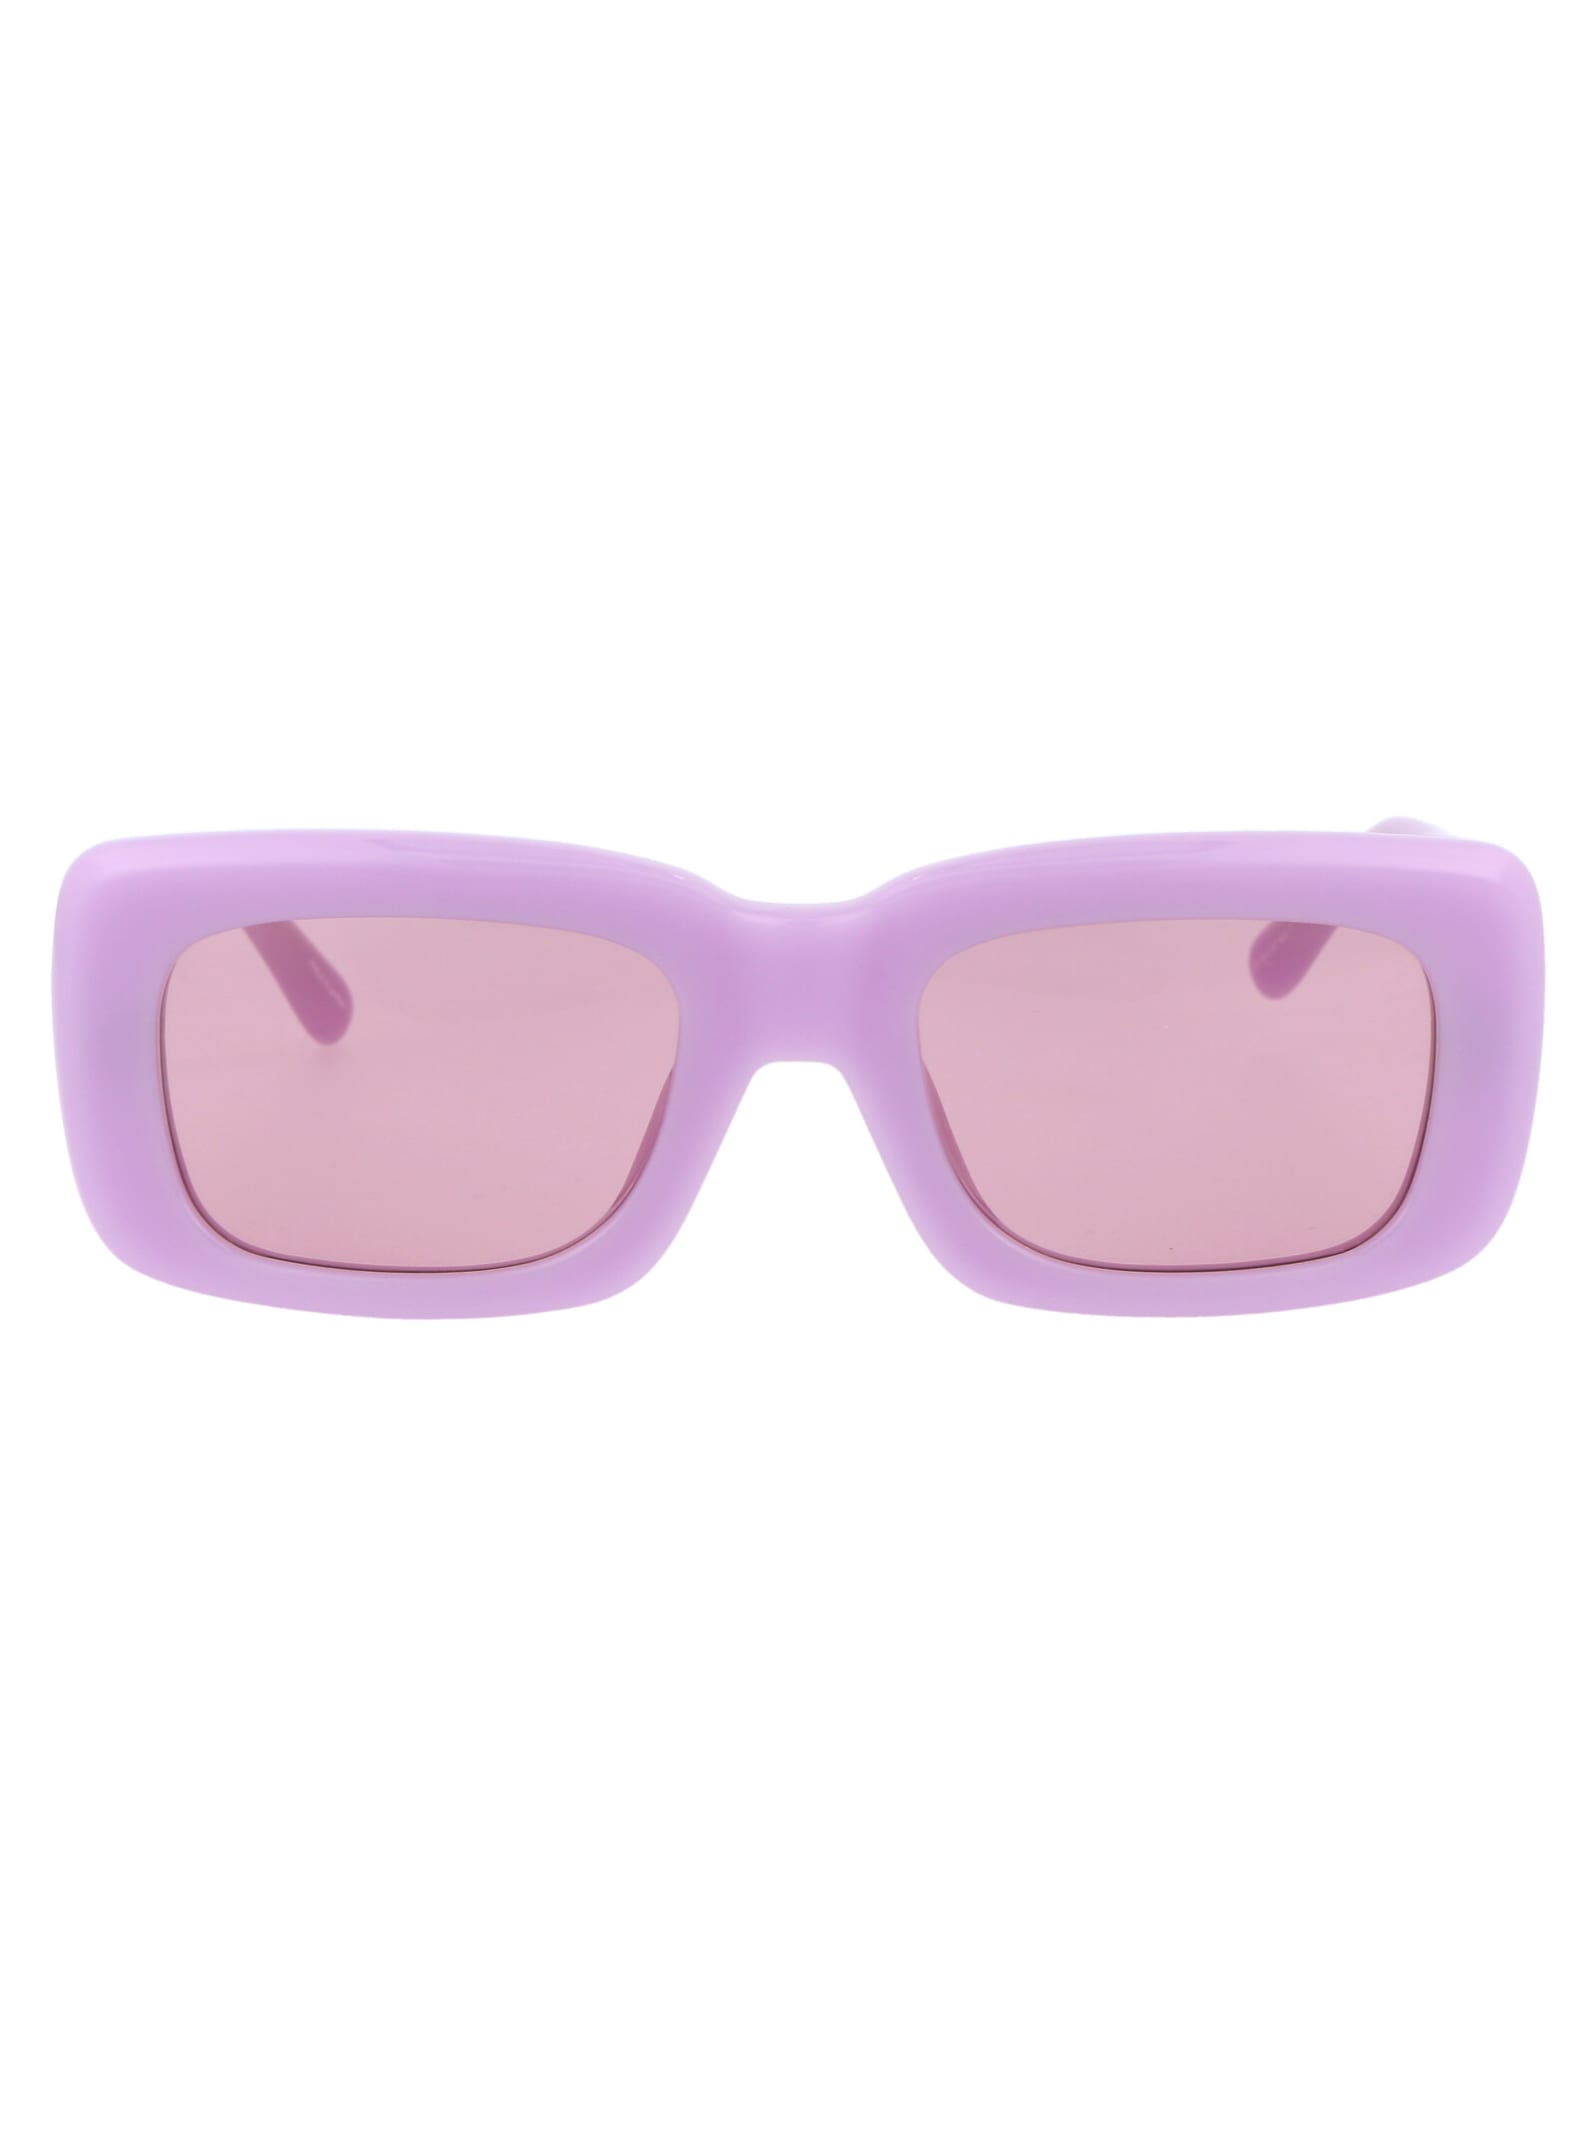 The Attico Marfa Sunglasses